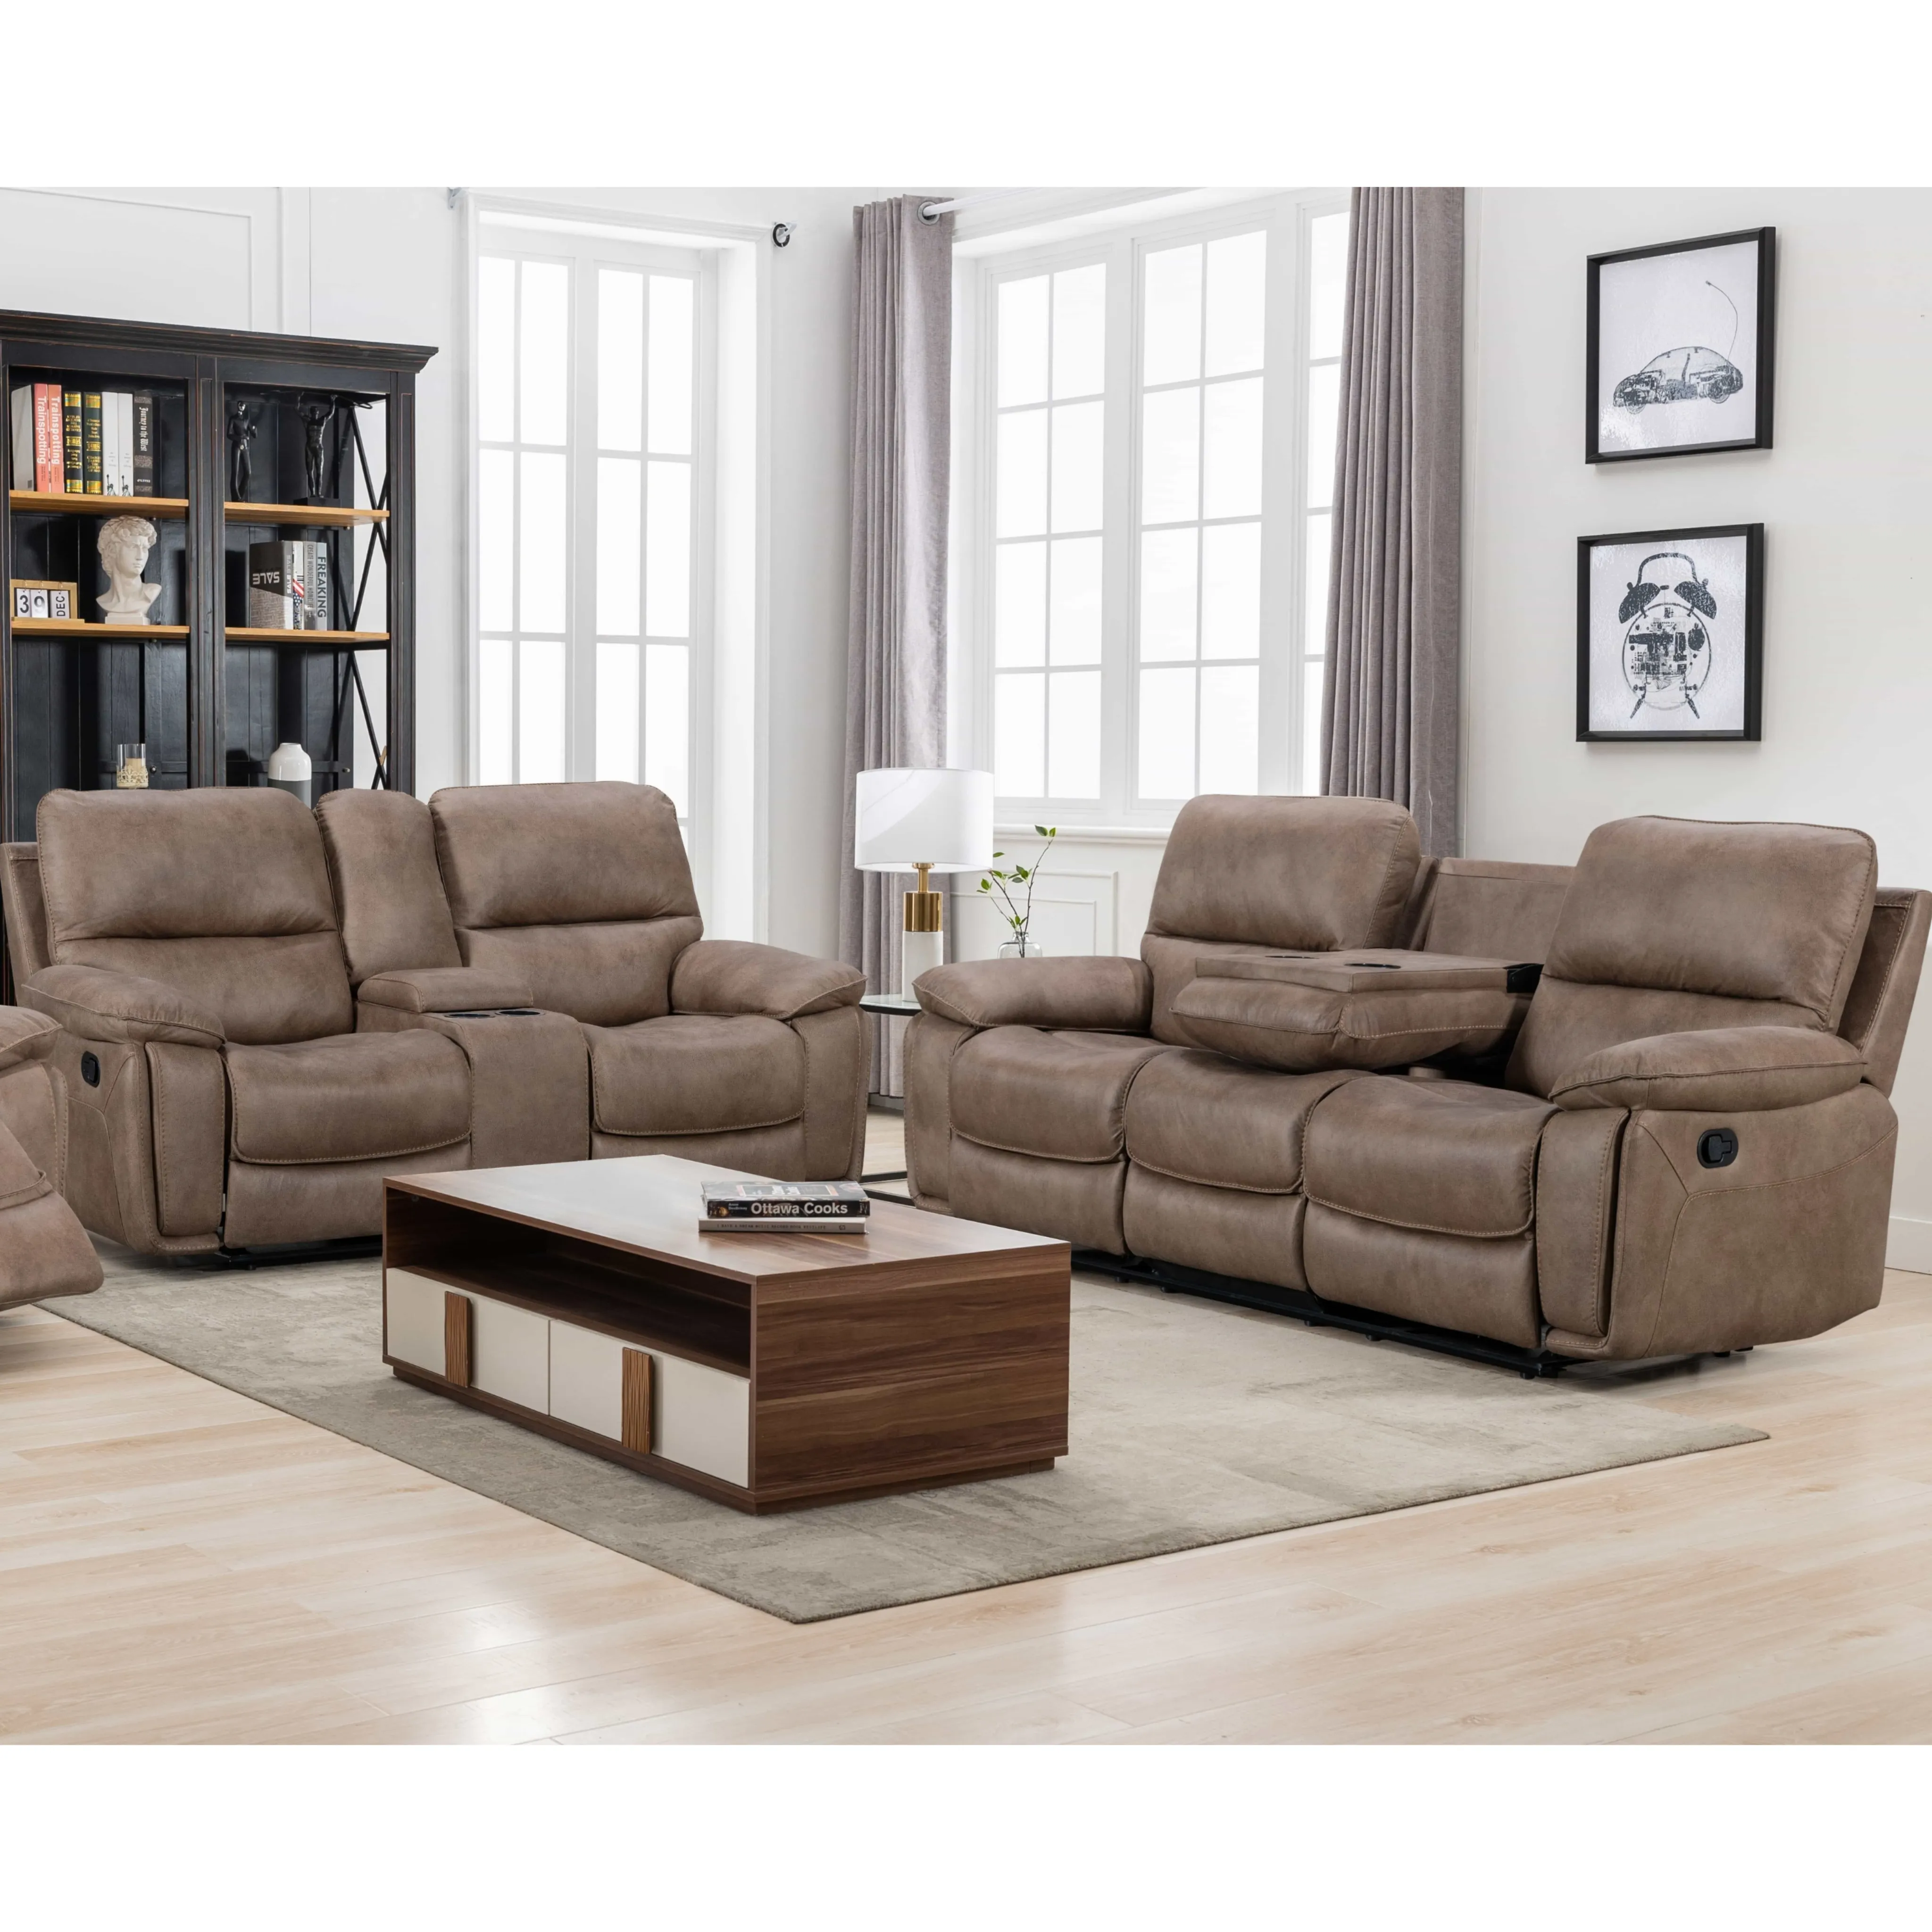 Tela de microfibra Loveseat reclinable 2 asientos sofá reclinable sala de estar reclinables al por mayor al por menor